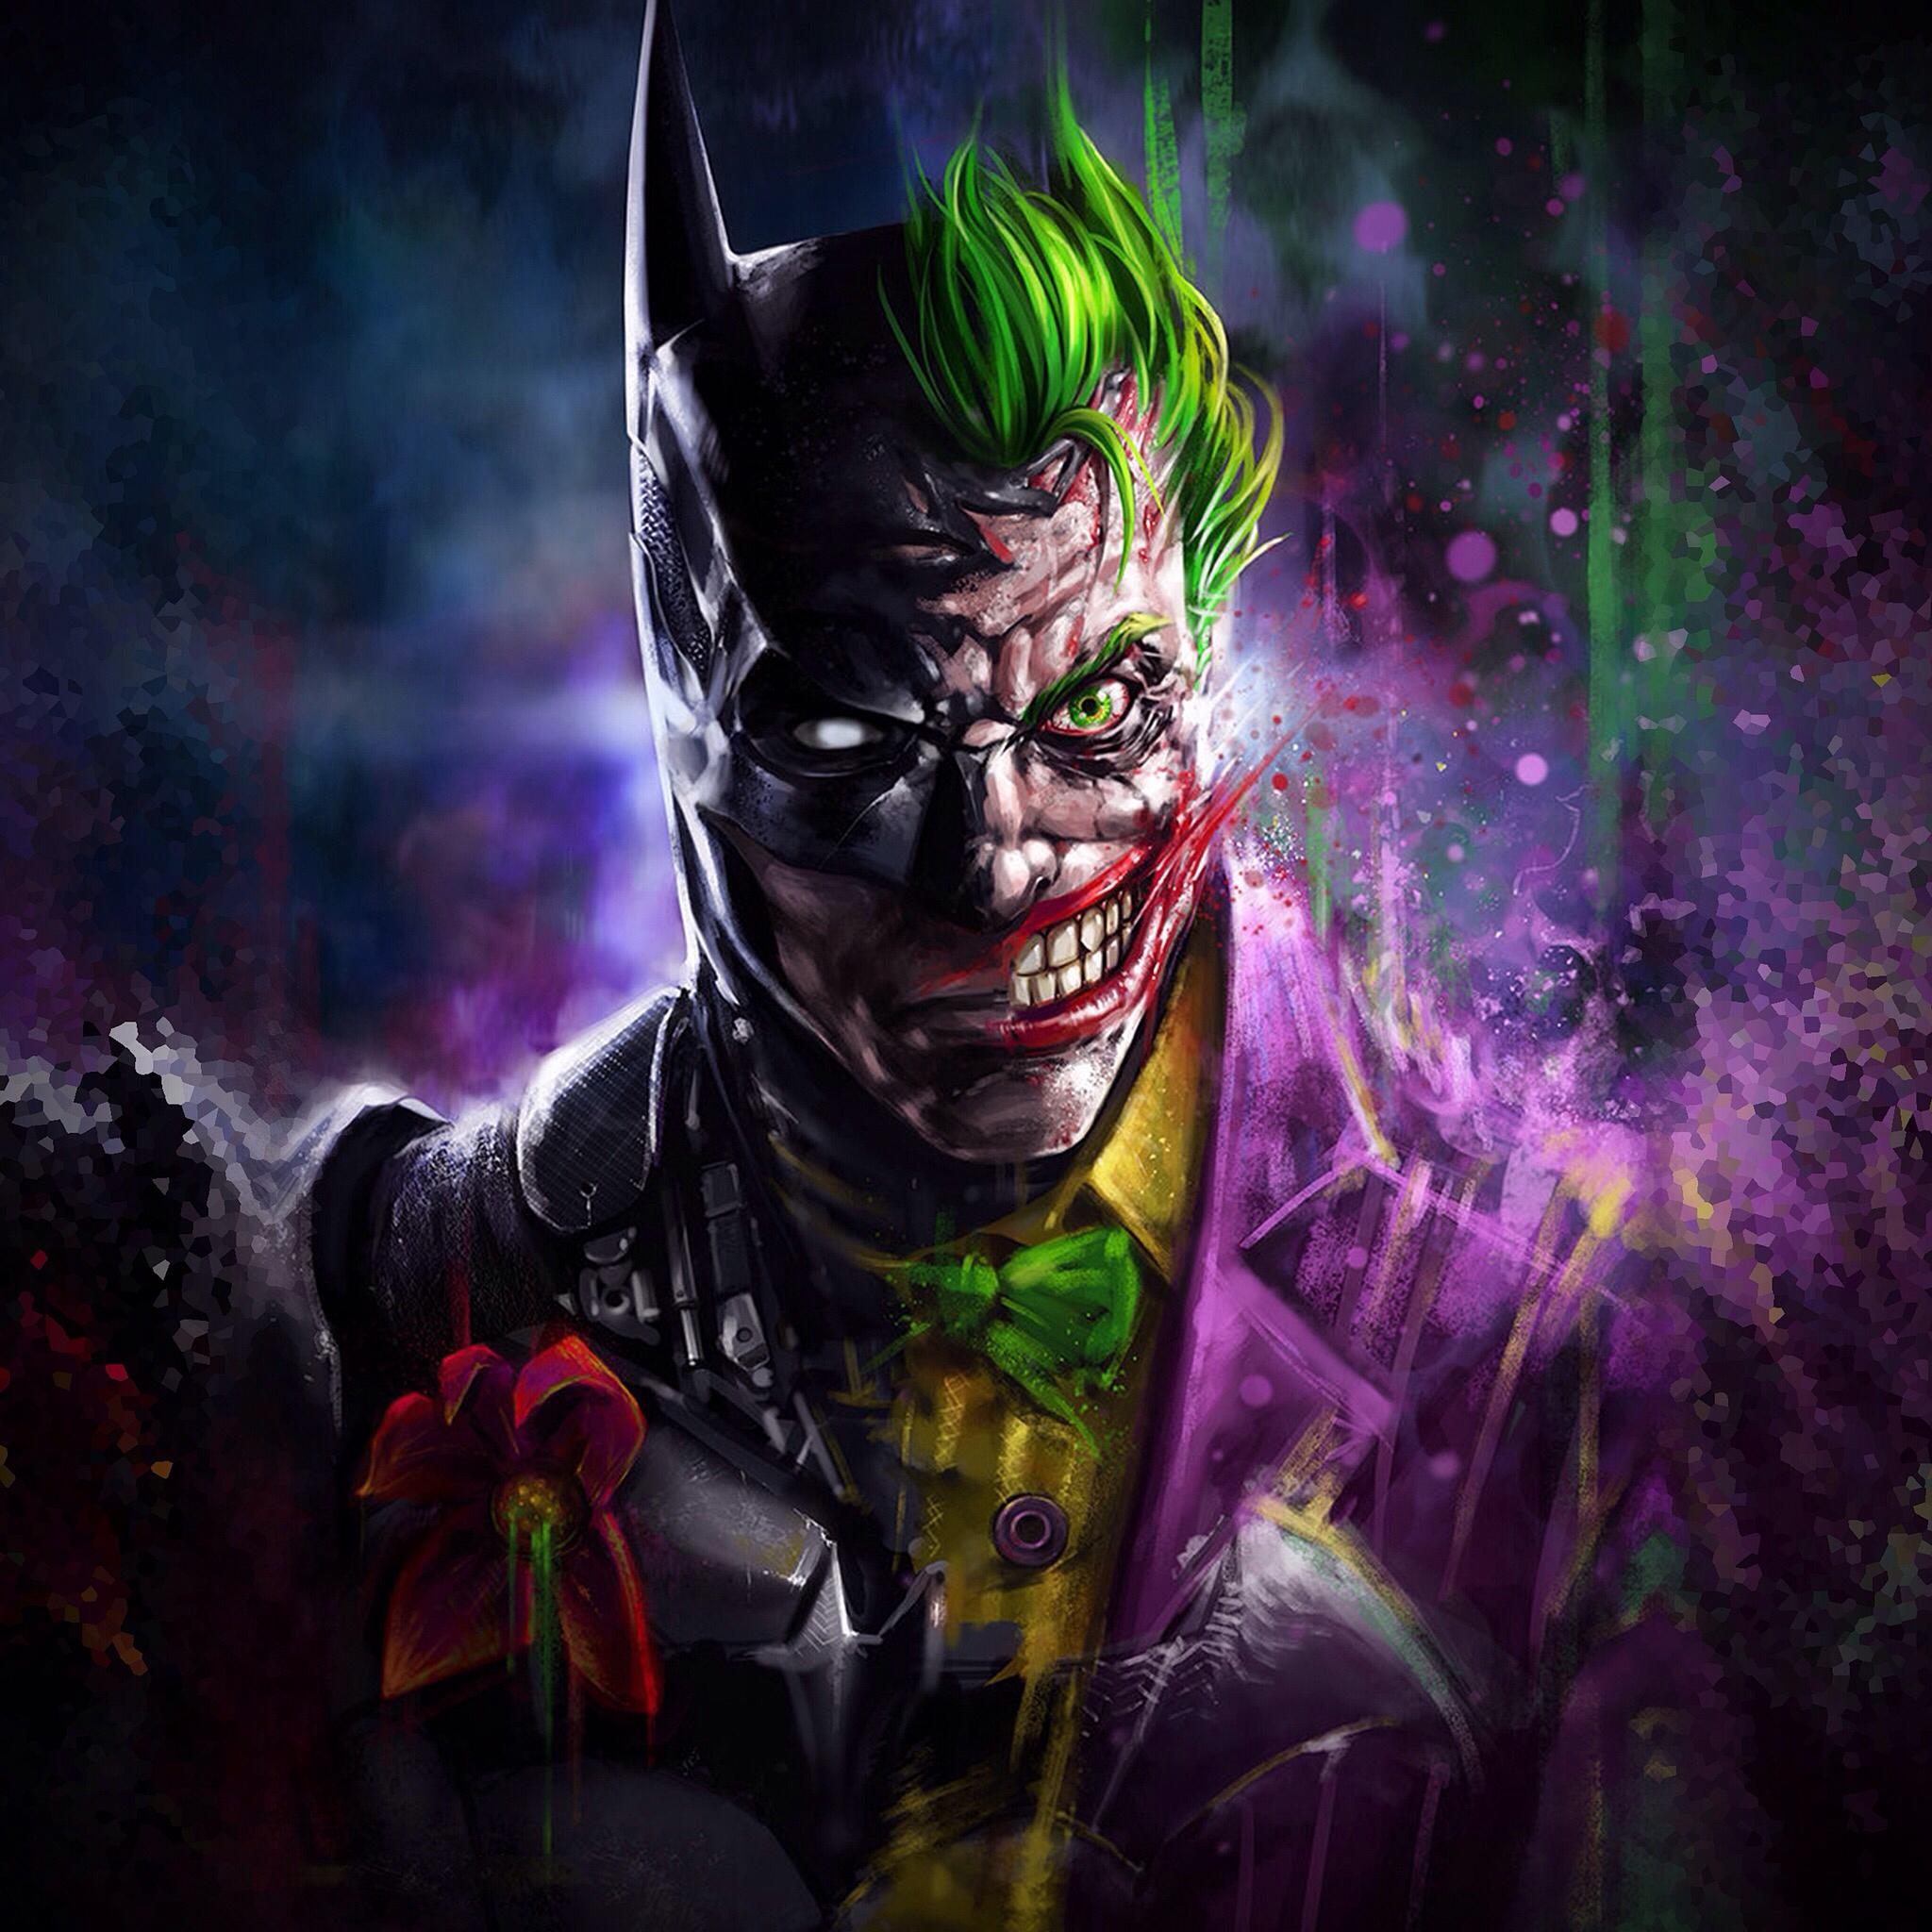 2048 x 2048 · jpeg - Batman Joker Art, HD Superheroes, 4k Wallpapers, Images, Backgrounds ...